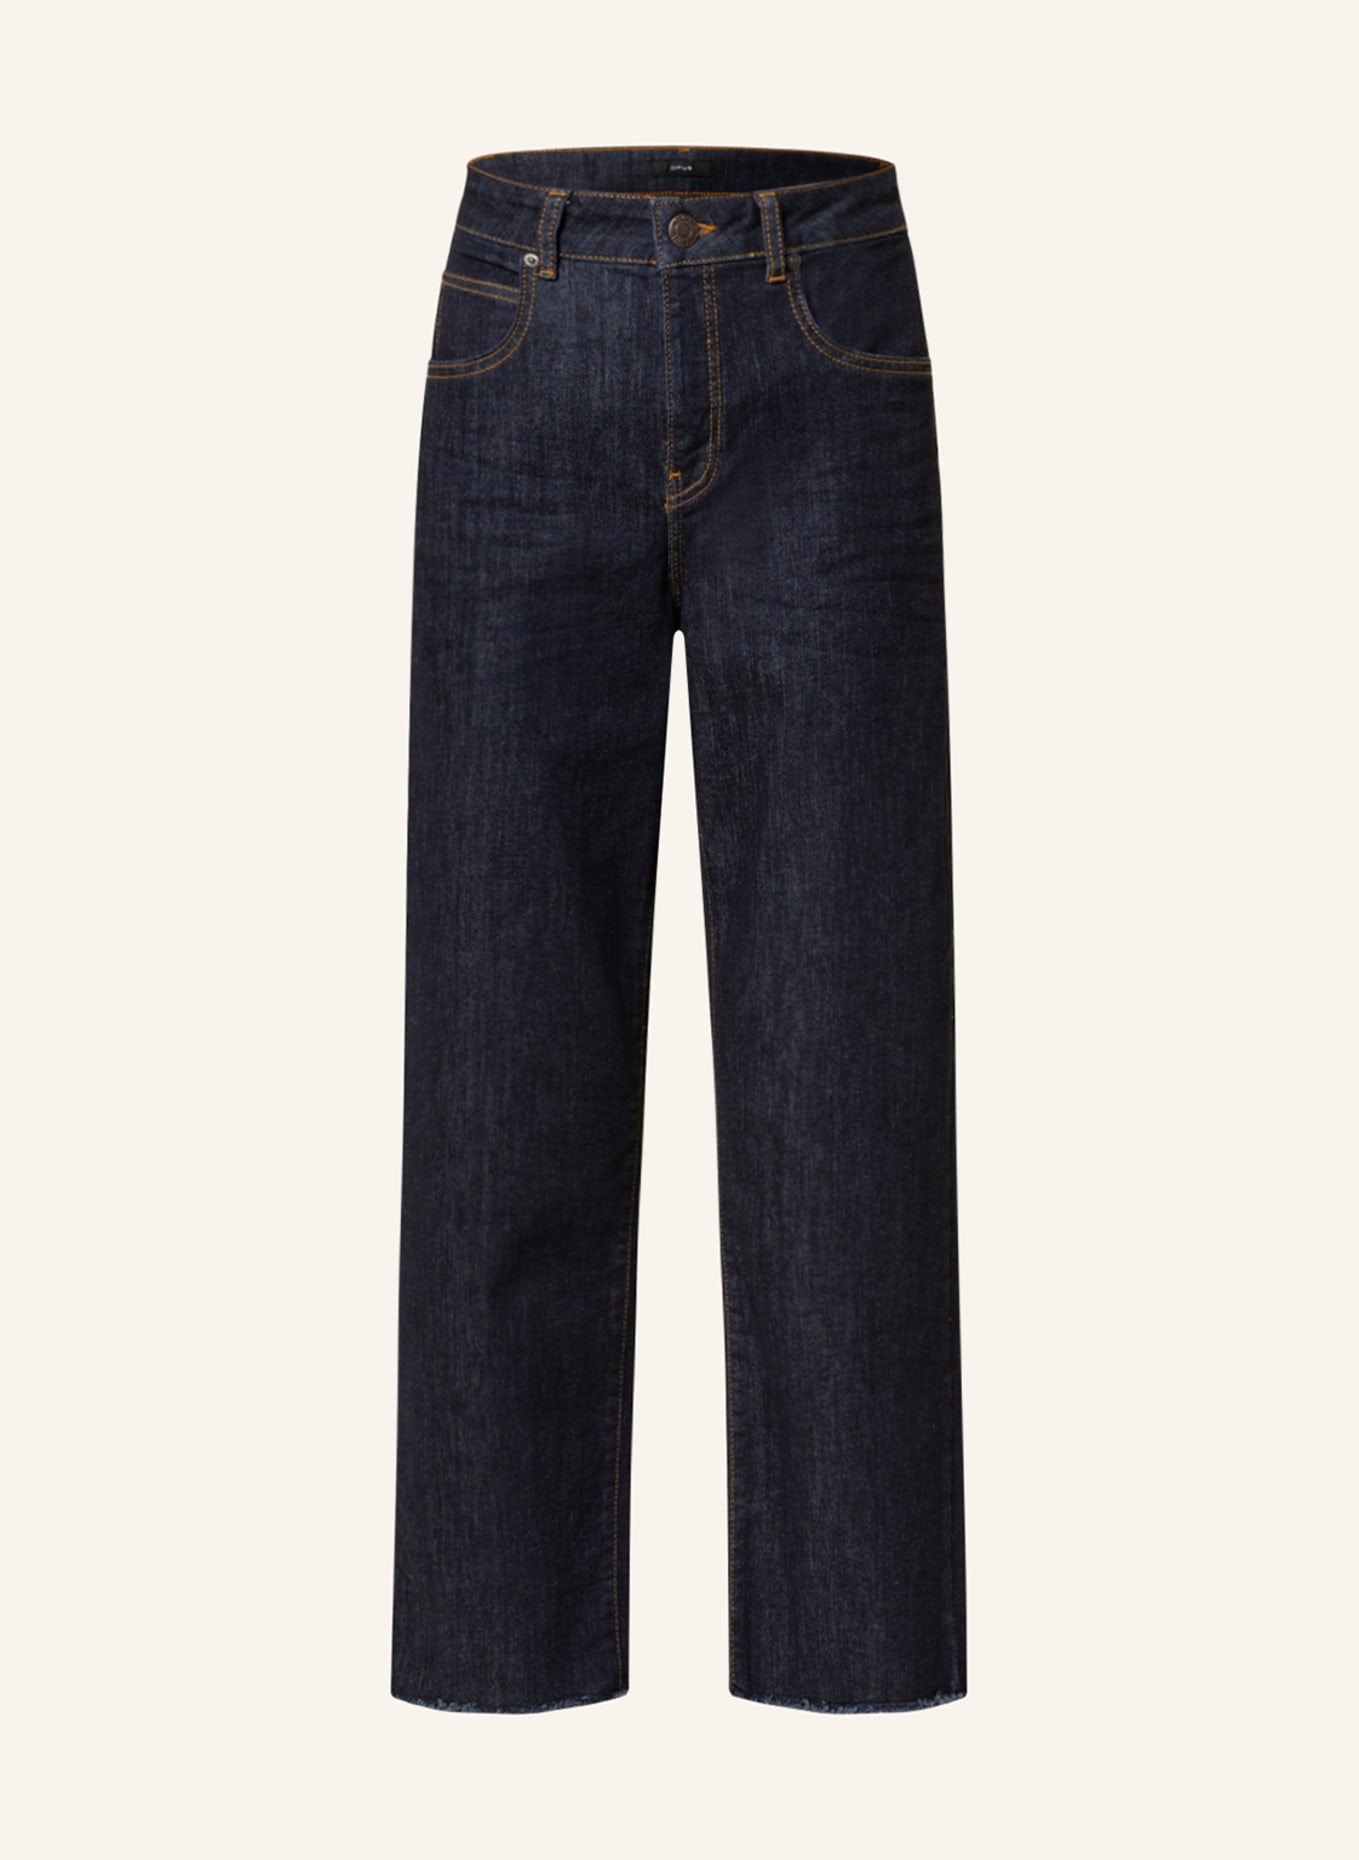 OPUS 7/8-Jeans MOMITO, Farbe: 7439 rinsed blue (Bild 1)